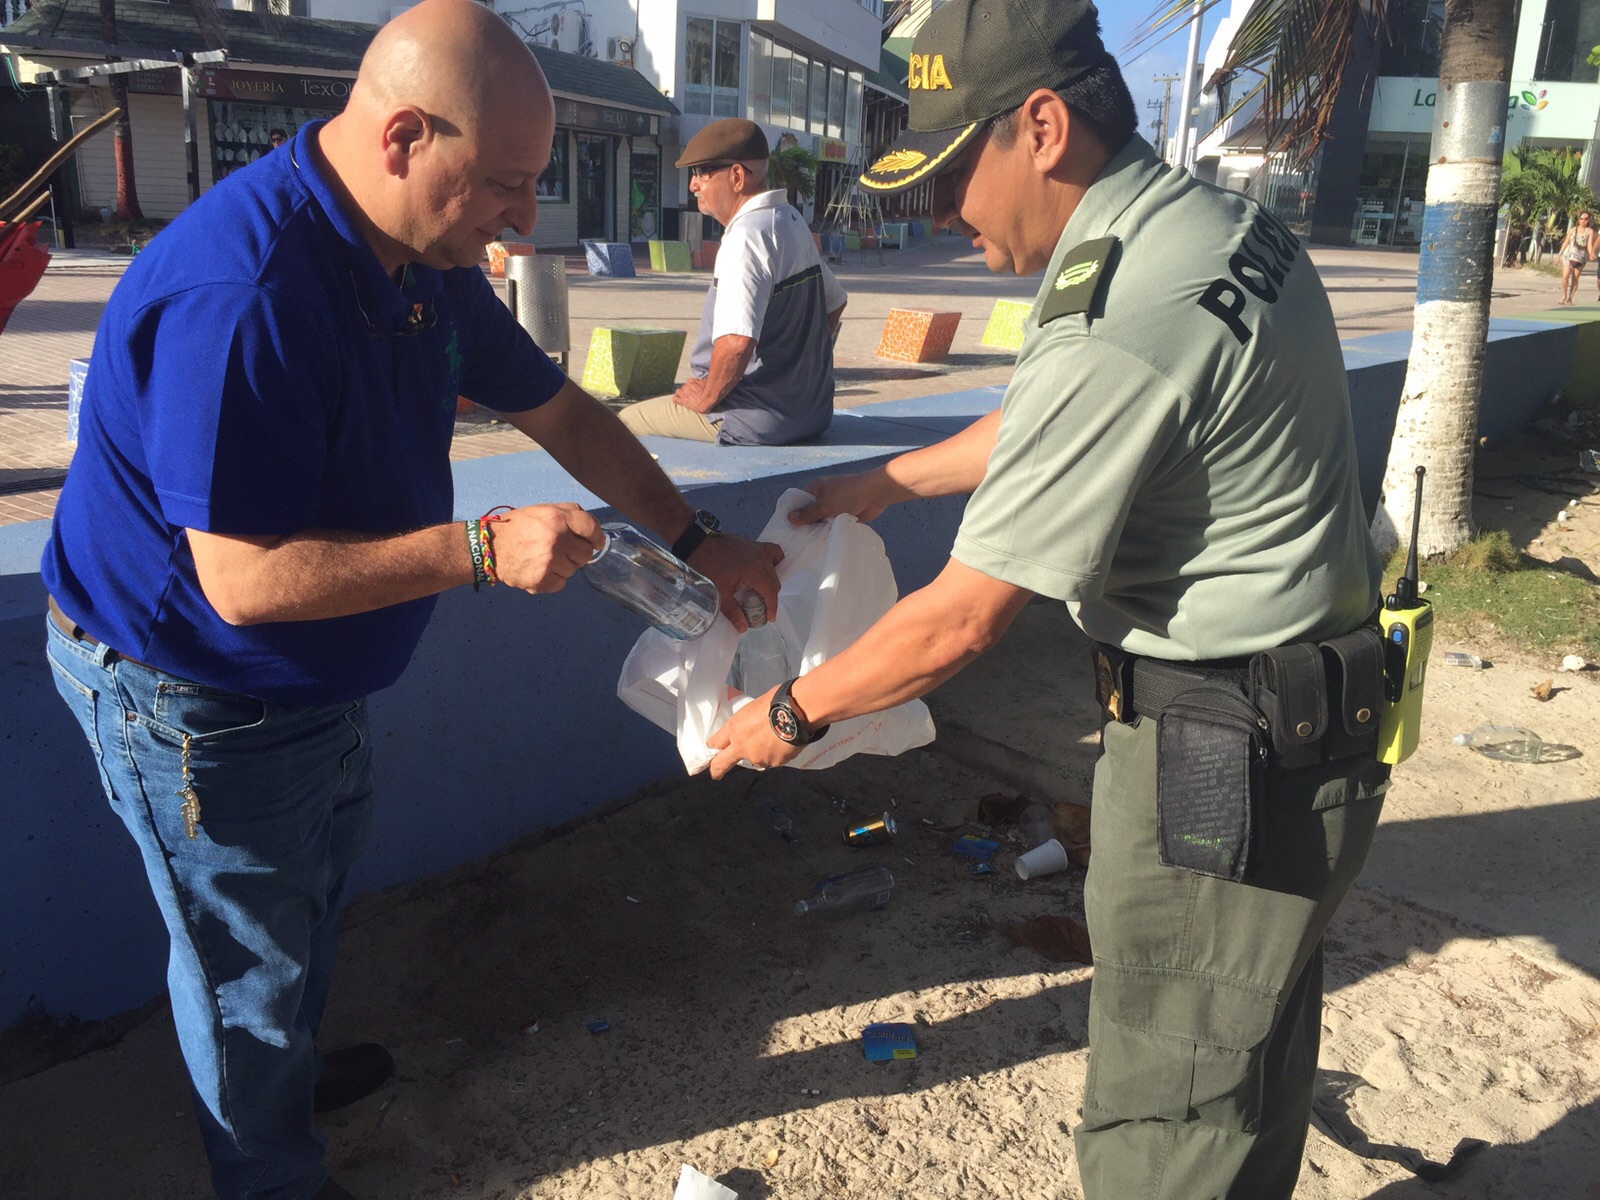 Gobernador Ronald apoyando la limpieza de playas